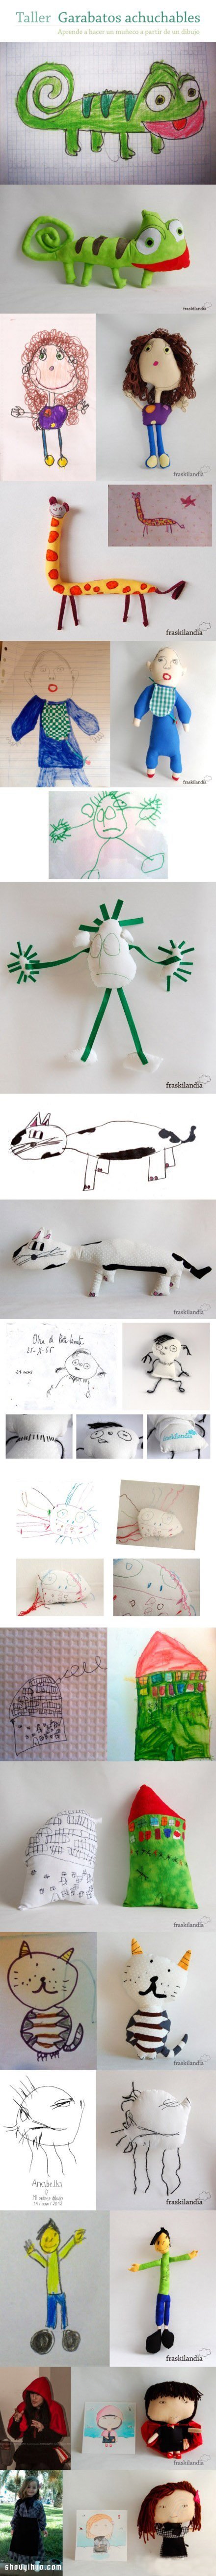 将孩子的随手涂鸦手工制作成布艺娃娃玩具